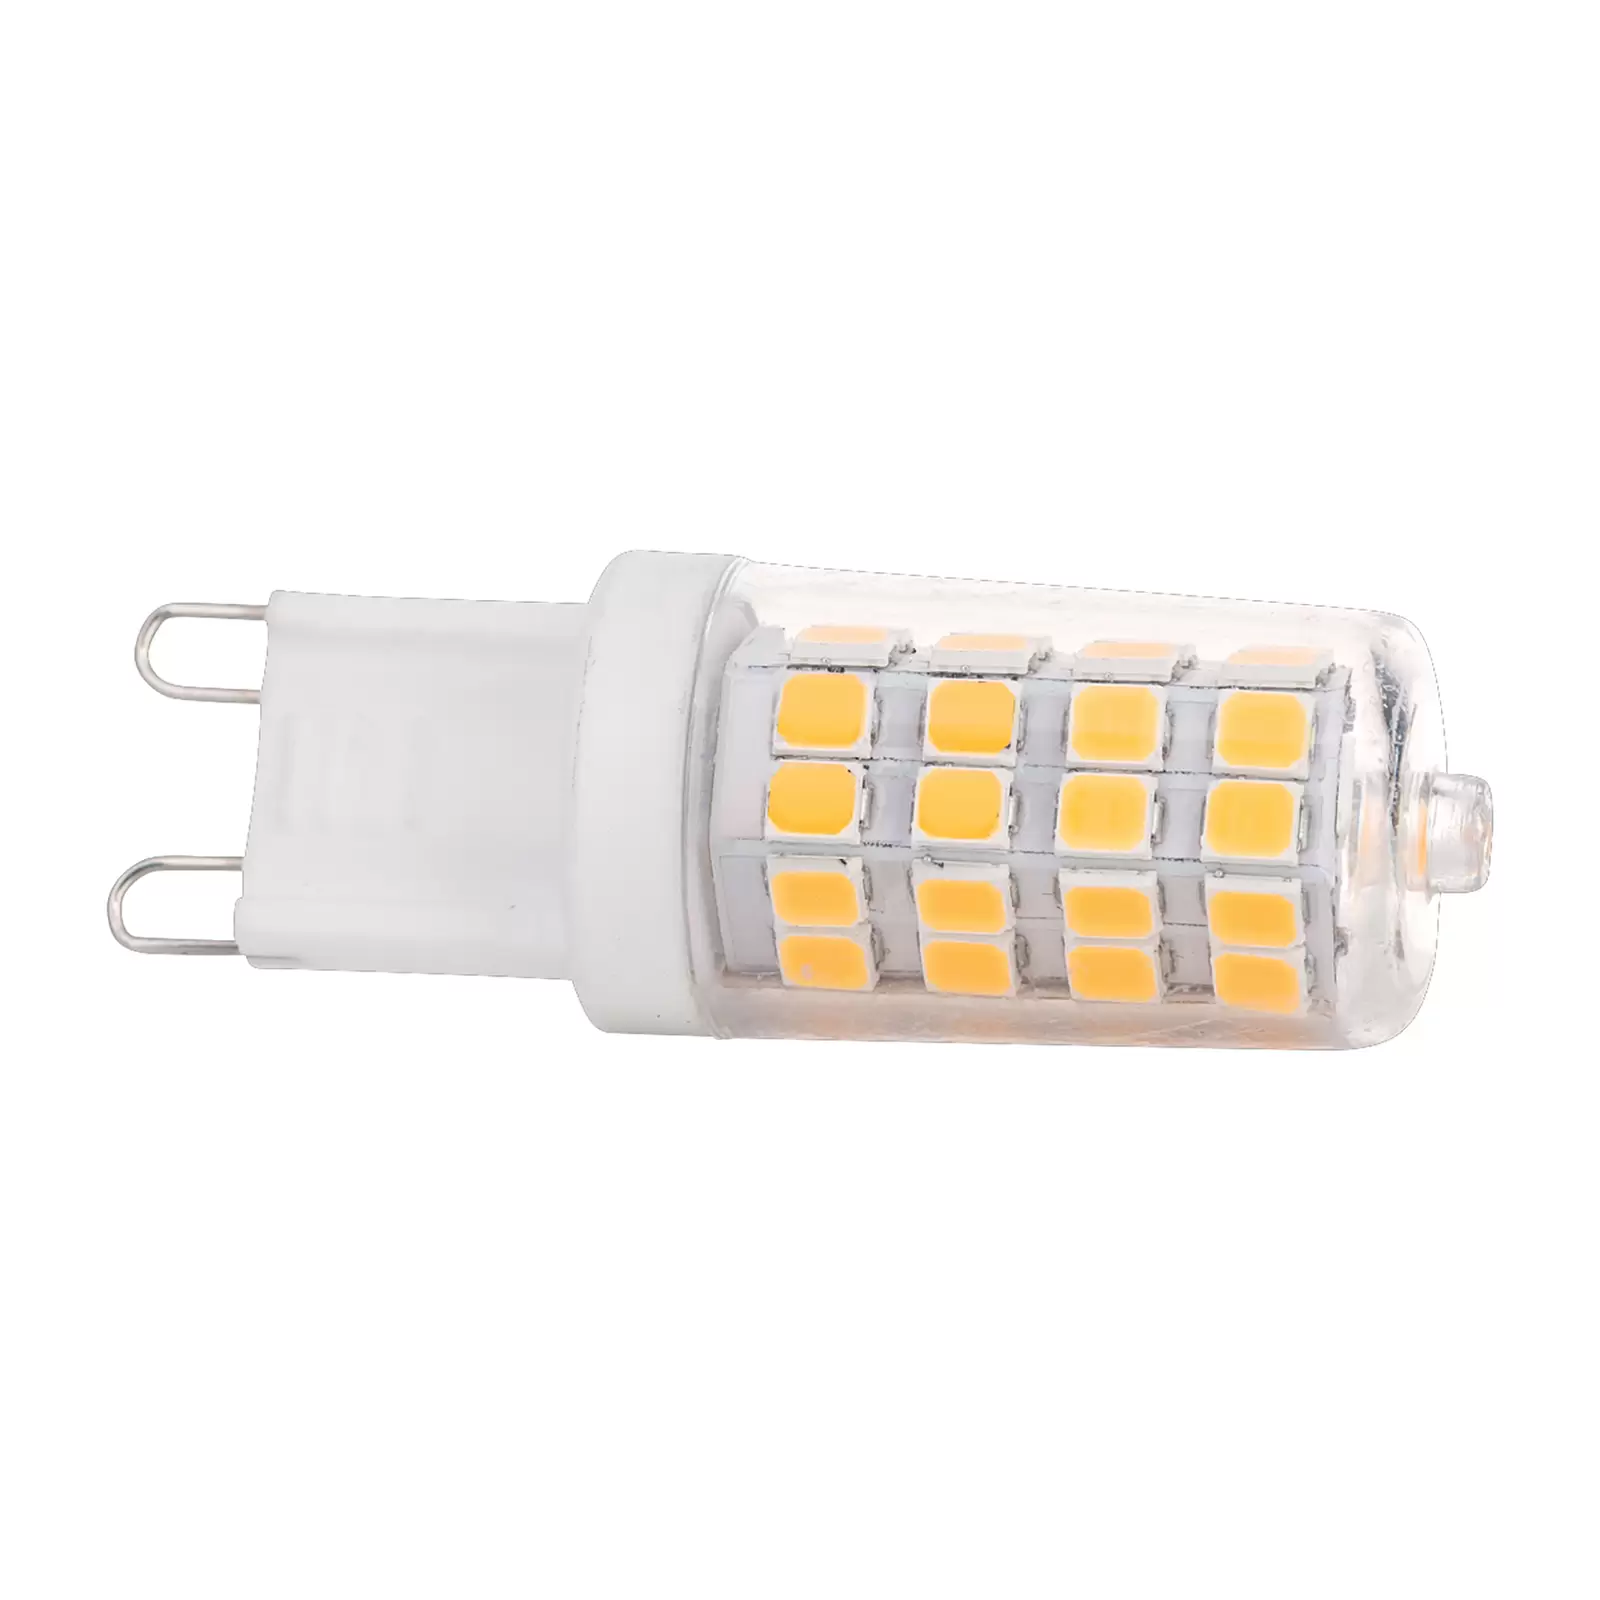 Ampoule broche LED G9 3W blanc chaud 3 000K 330lm